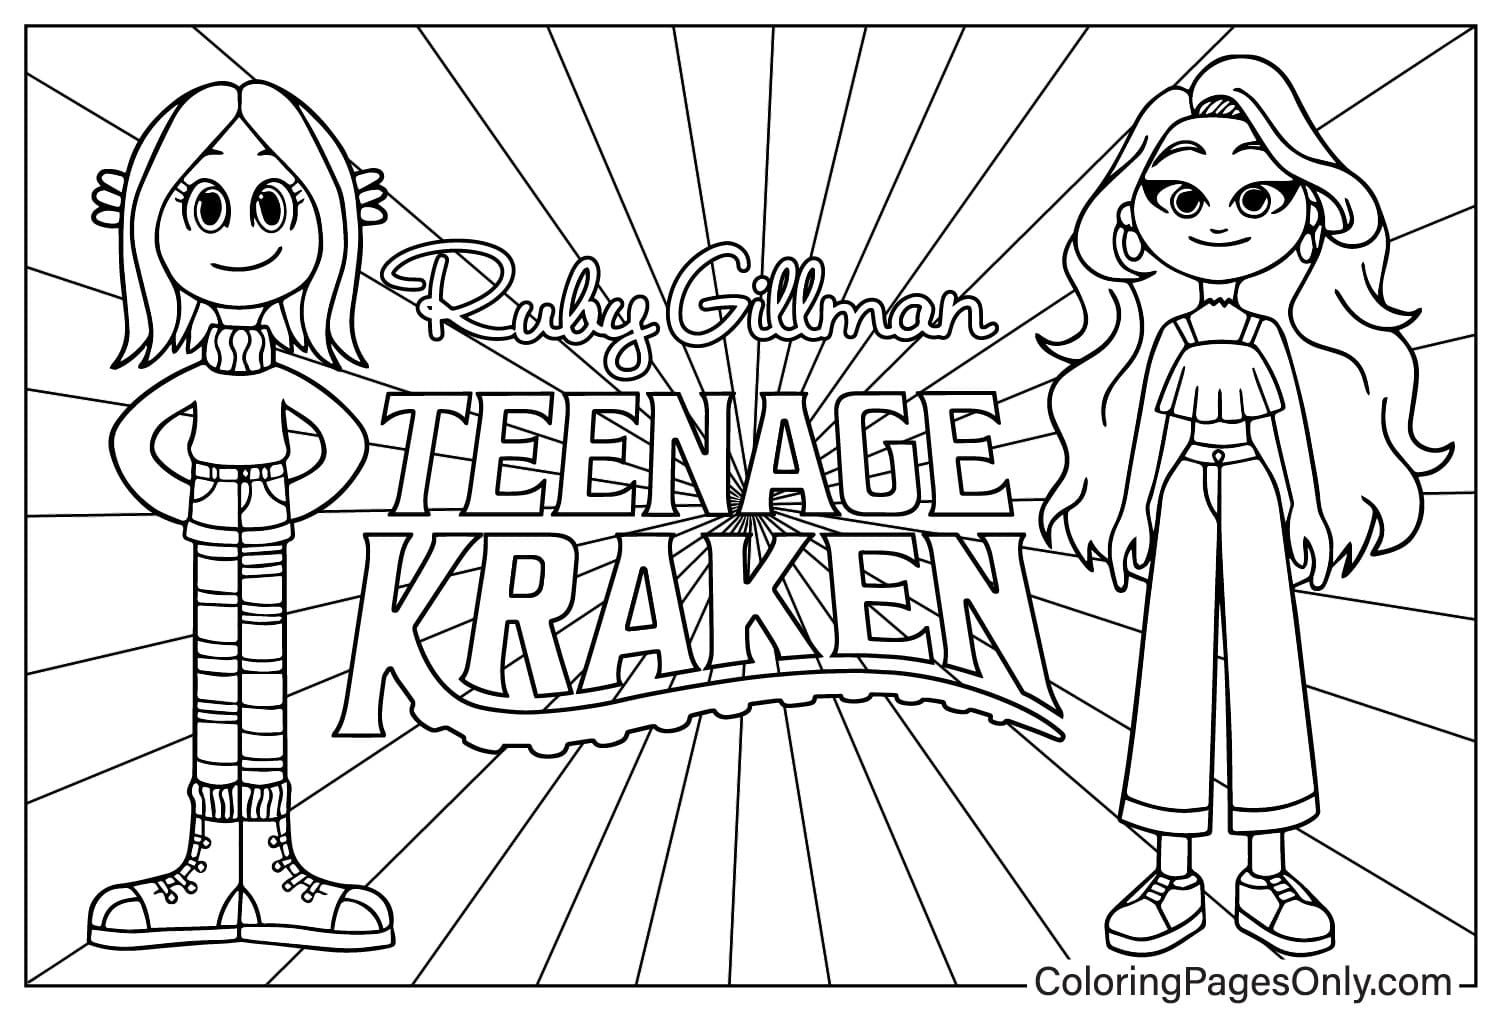 Ruby Gillman und Chelsea Malseite von Ruby Gillman Teenage Kraken